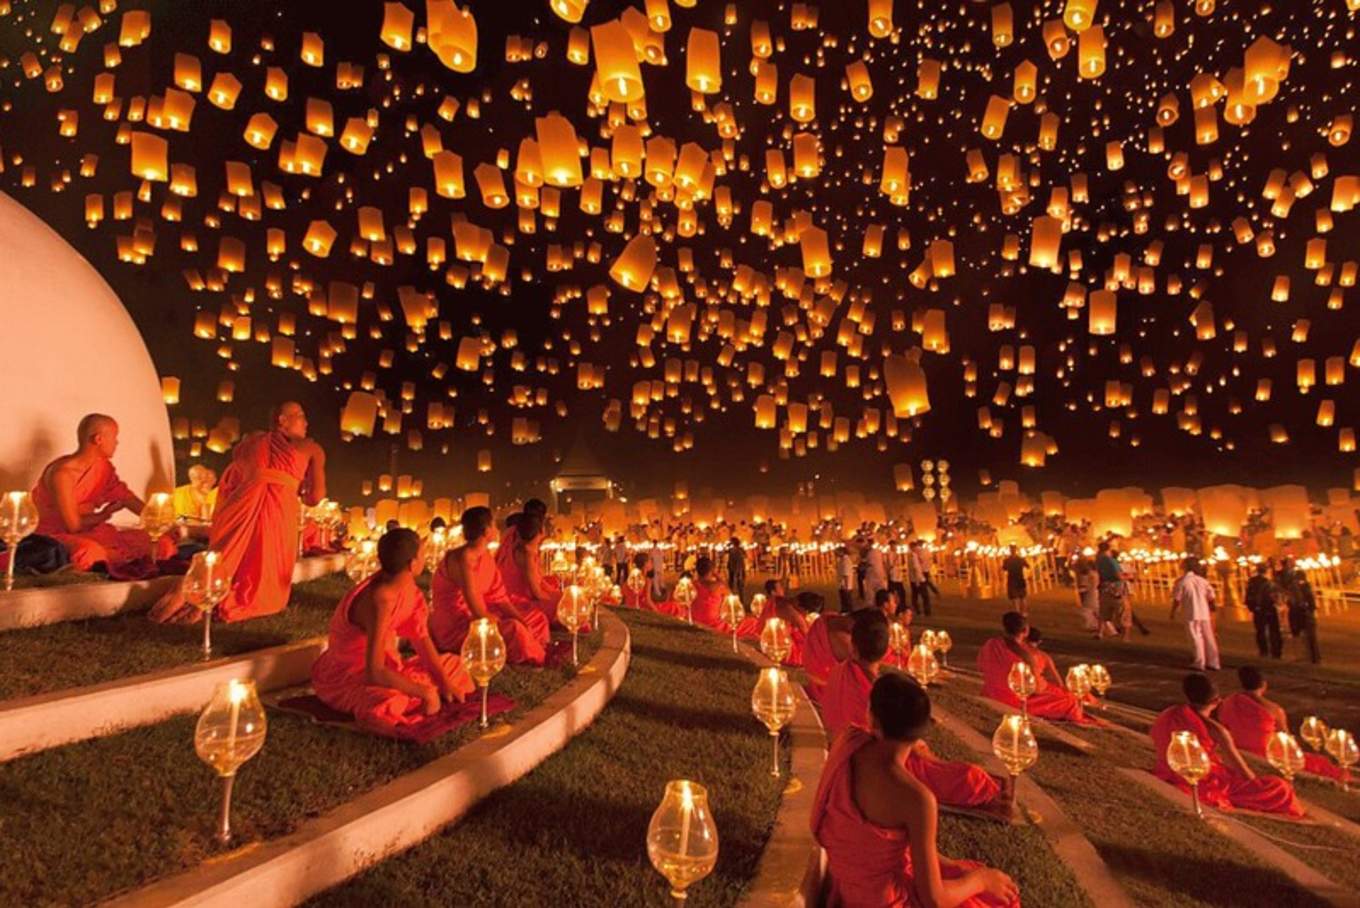 19泰國水燈節 泰國五大慶典之一 曼谷清邁11月盛大展開 水燈祈福 萬人天燈 煙花遊行 泰國情人節 人生必去唯美浪漫場景